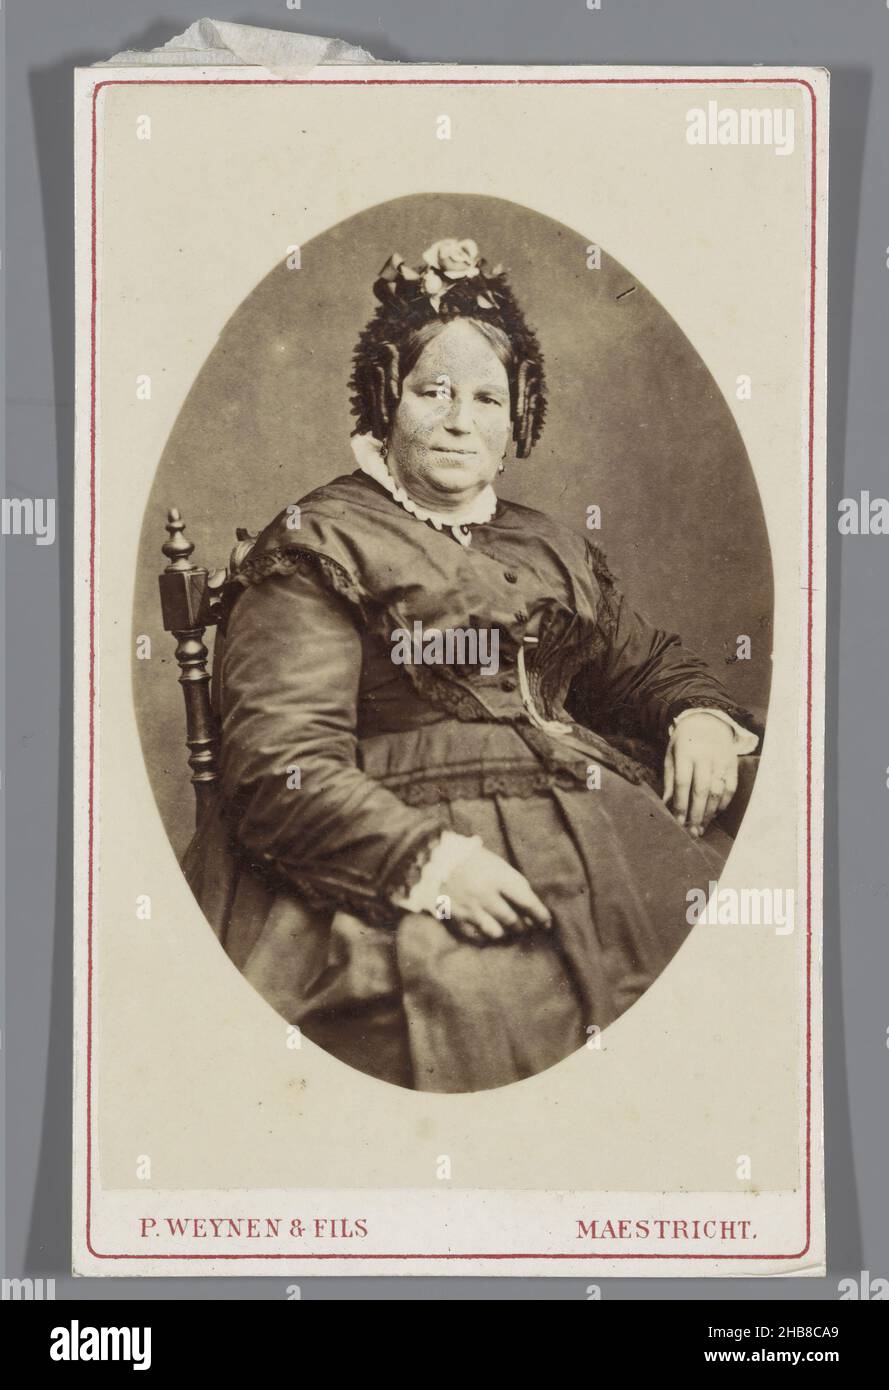 Porträt einer unbekannten Frau, Pierre Weynen & Fils (auf Objekt erwähnt), Maastricht, 1854 - 1865, Papier, Karton, Albumin-Print, Höhe 100 mm × Breite 62 mm Stockfoto